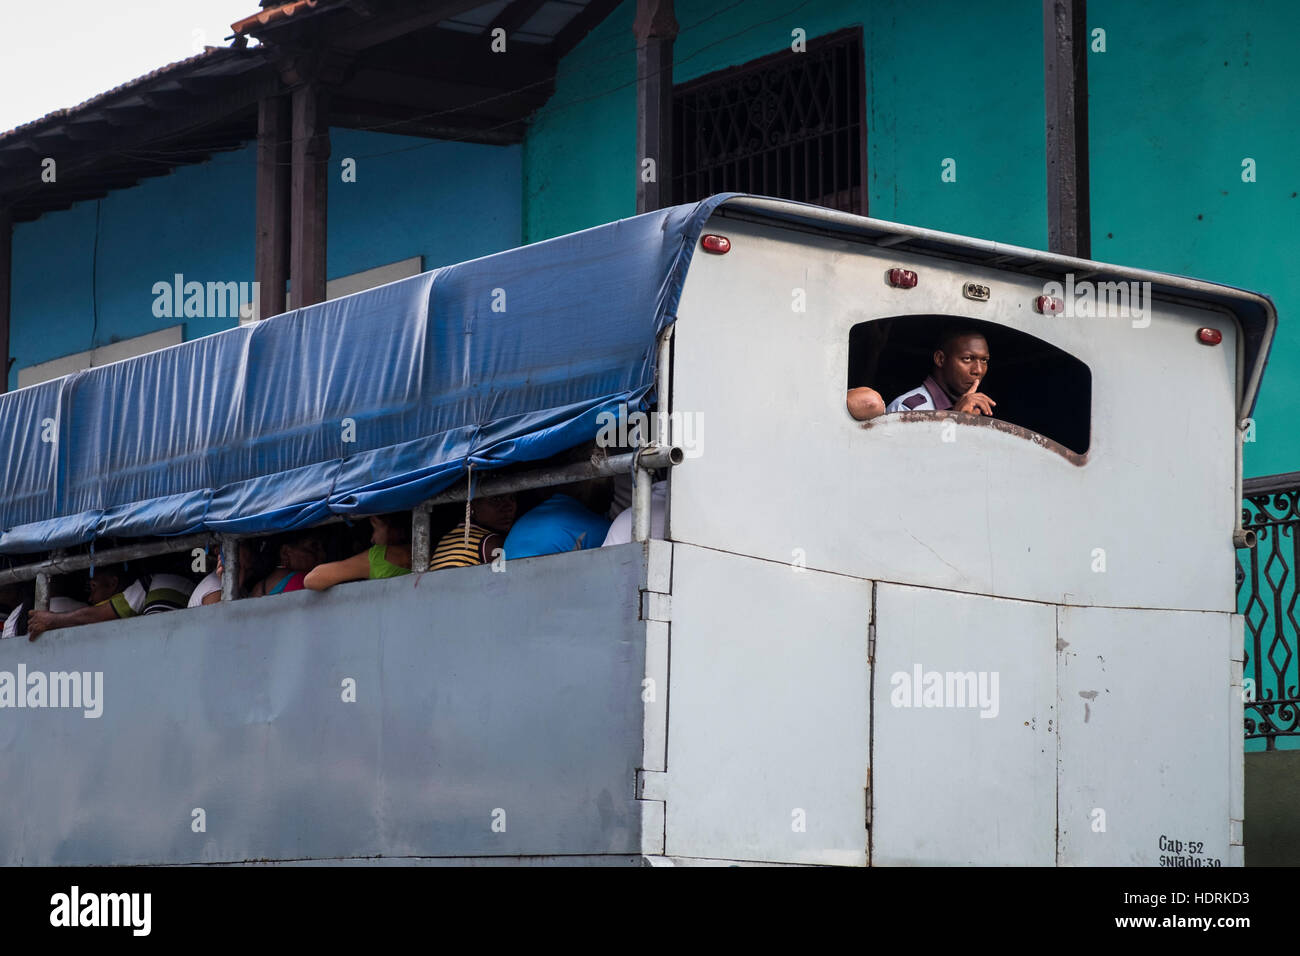 L'homme regardant par la fenêtre arrière d'un camion, bus, taxi, transports publics locaux à Santiago de Cuba, Cuba Banque D'Images